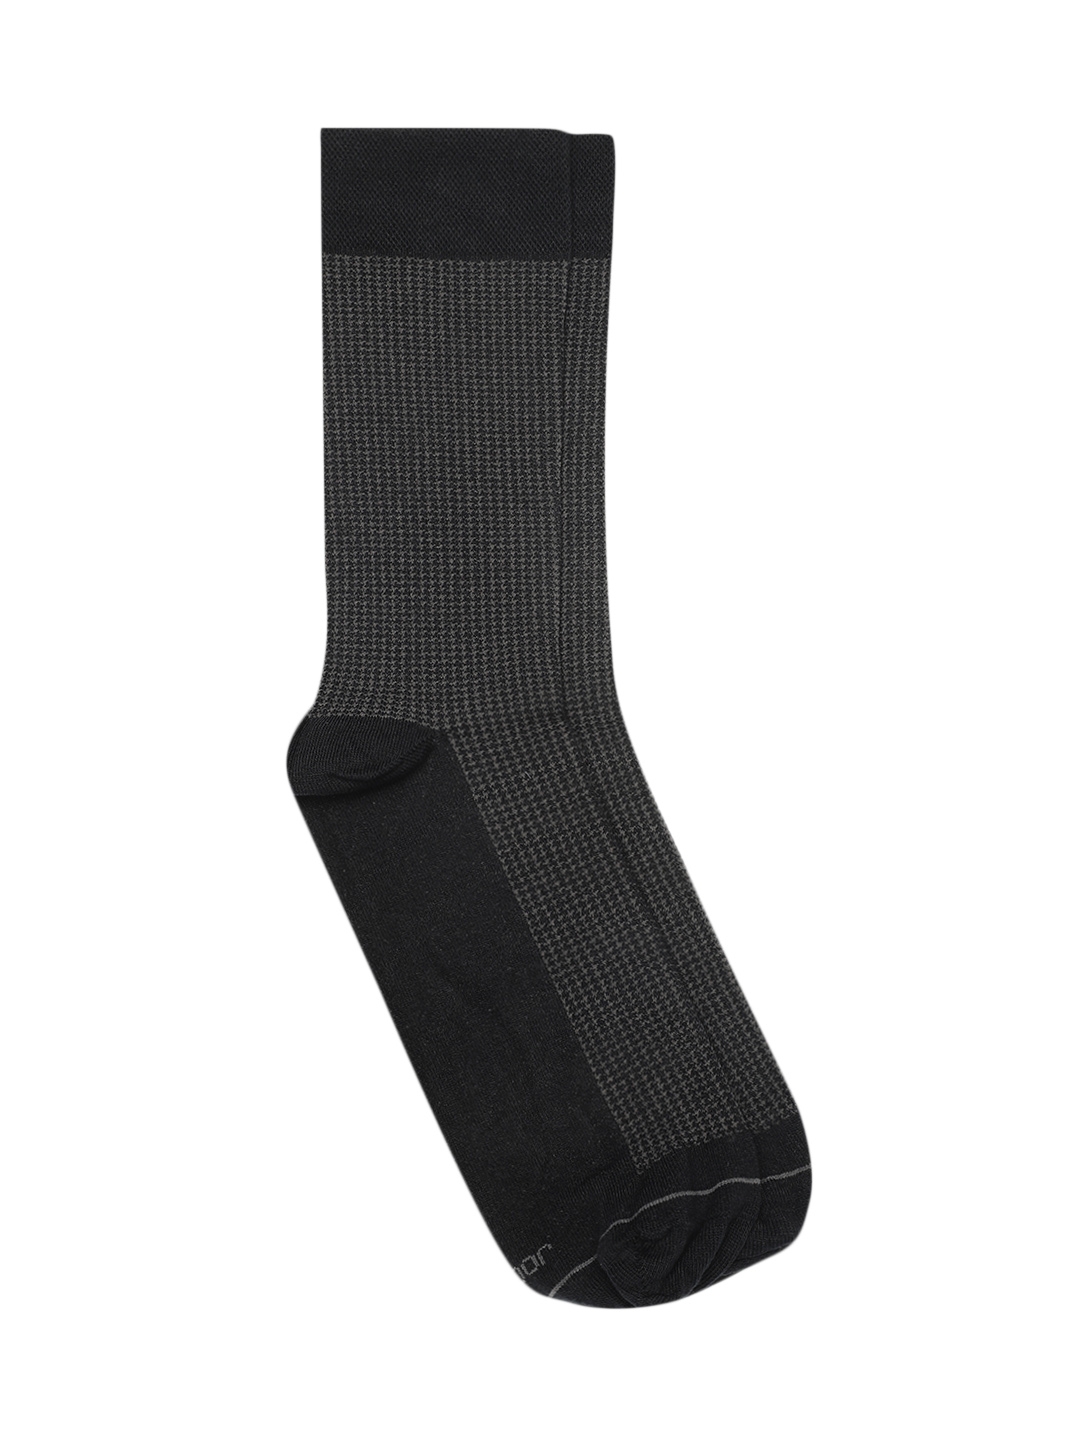 Men Multicoloured Patterned Calf length Socks